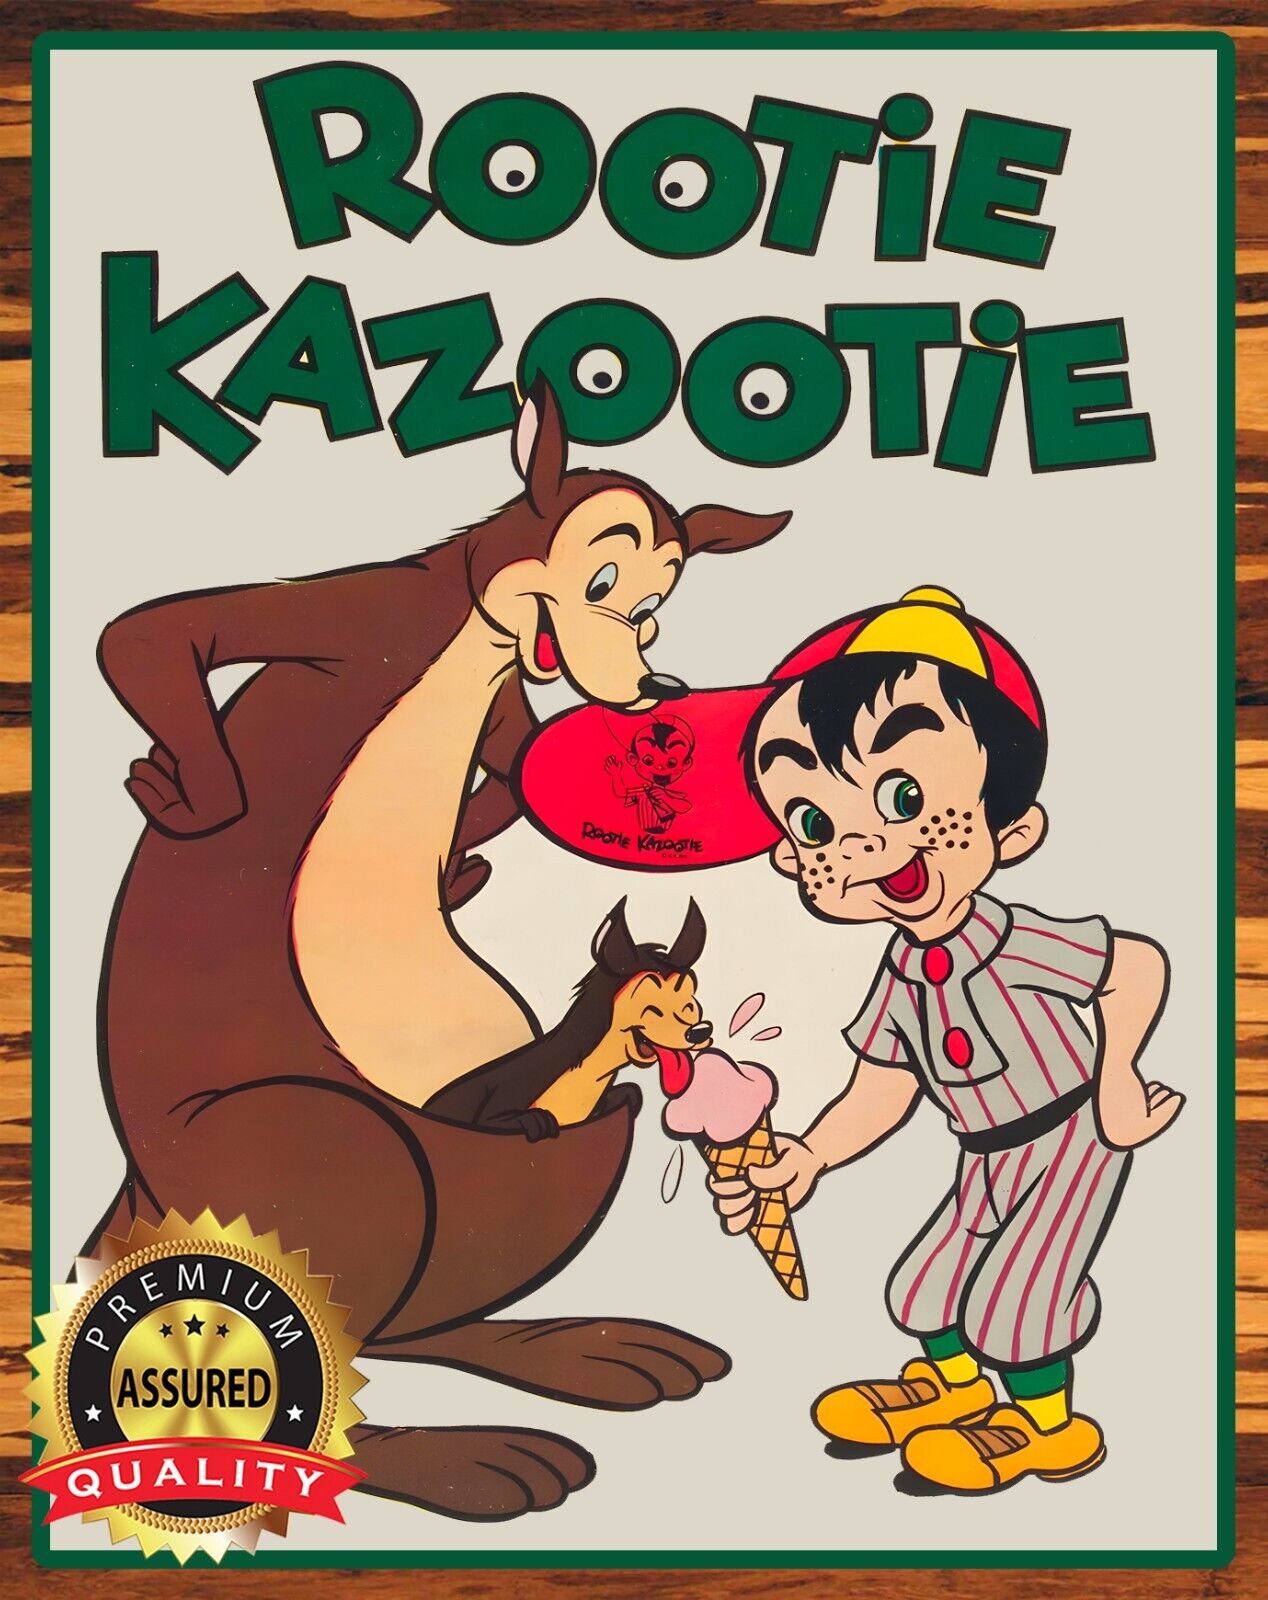 The Rootie Kazootie Club - TV Show - 1950s - Metal Sign 11 x 14